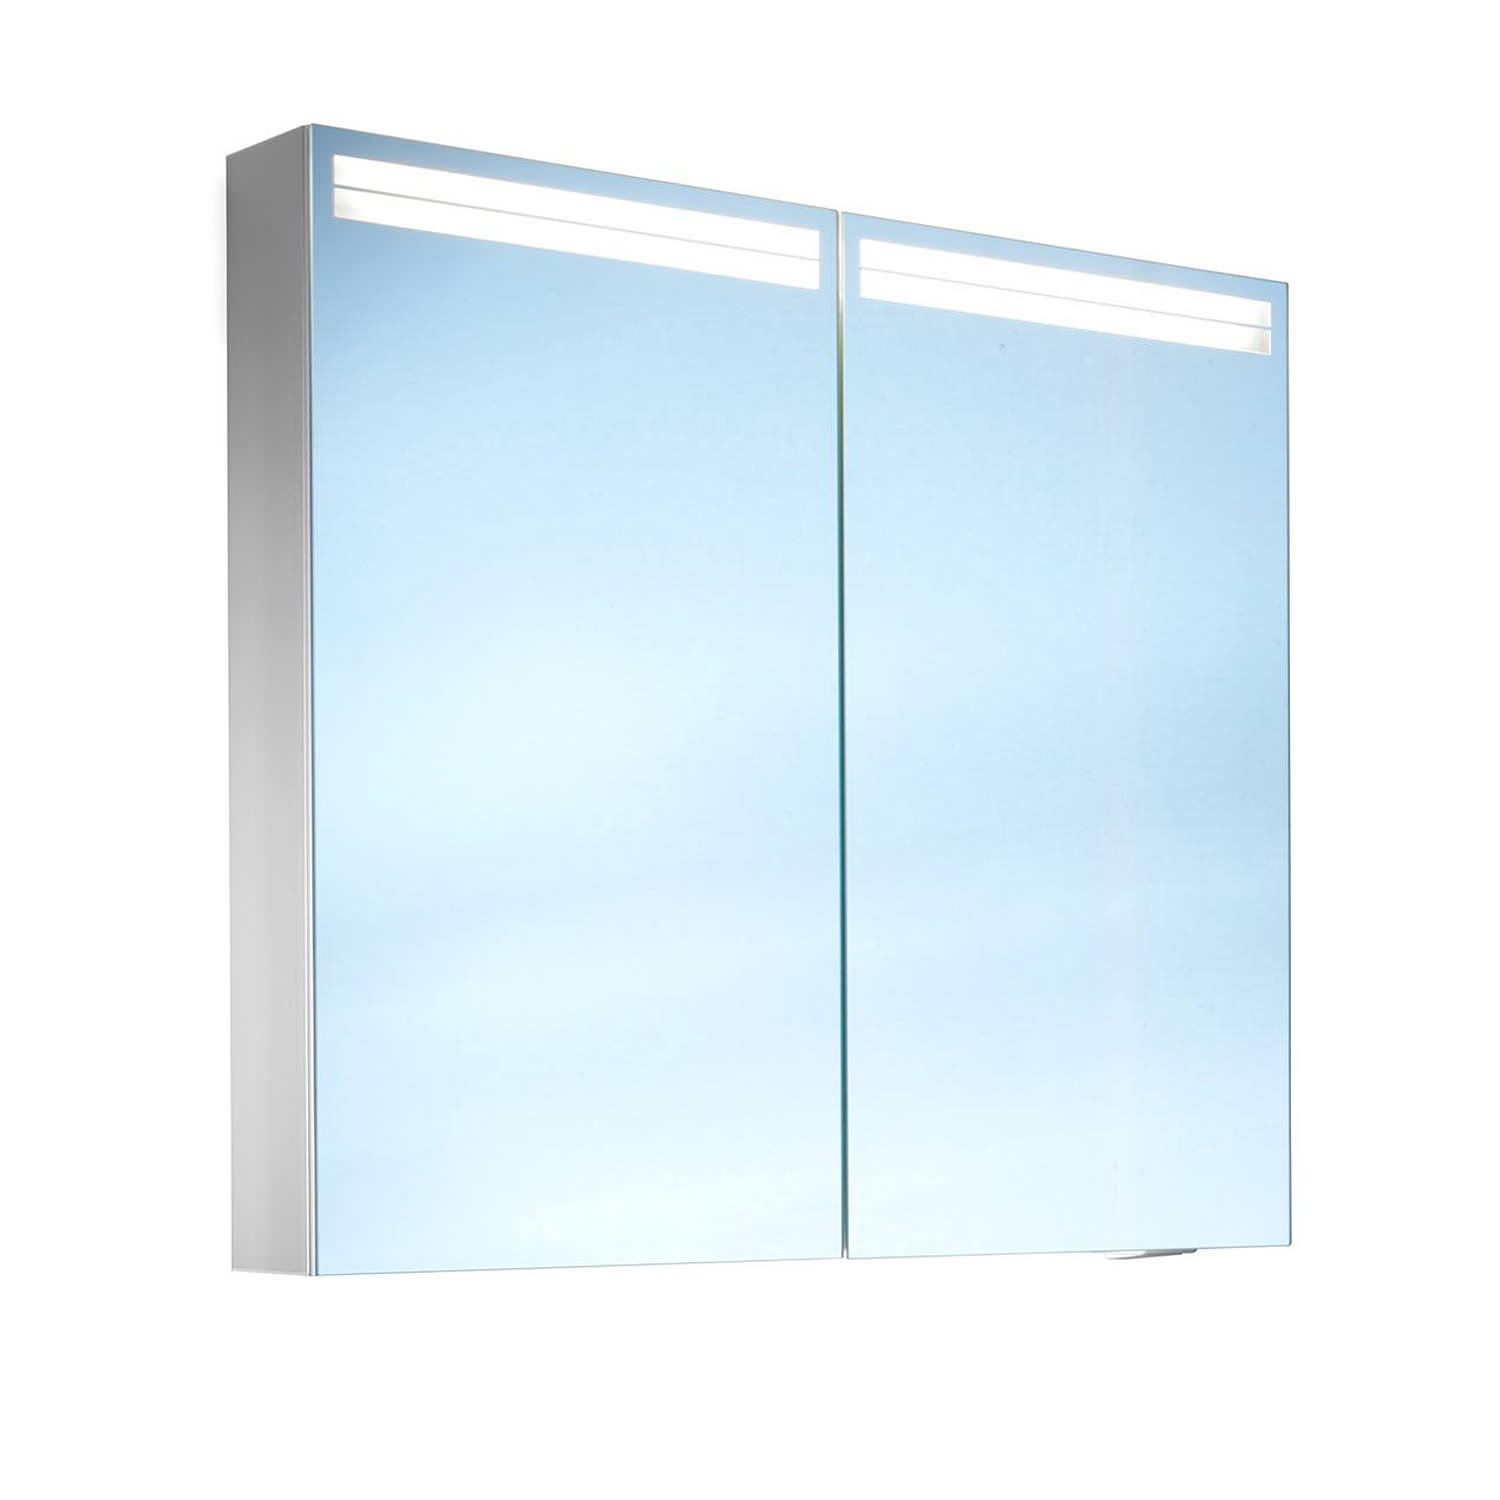 Schneider Arangaline 2 Door Mirror Cabinet More Sizes Available